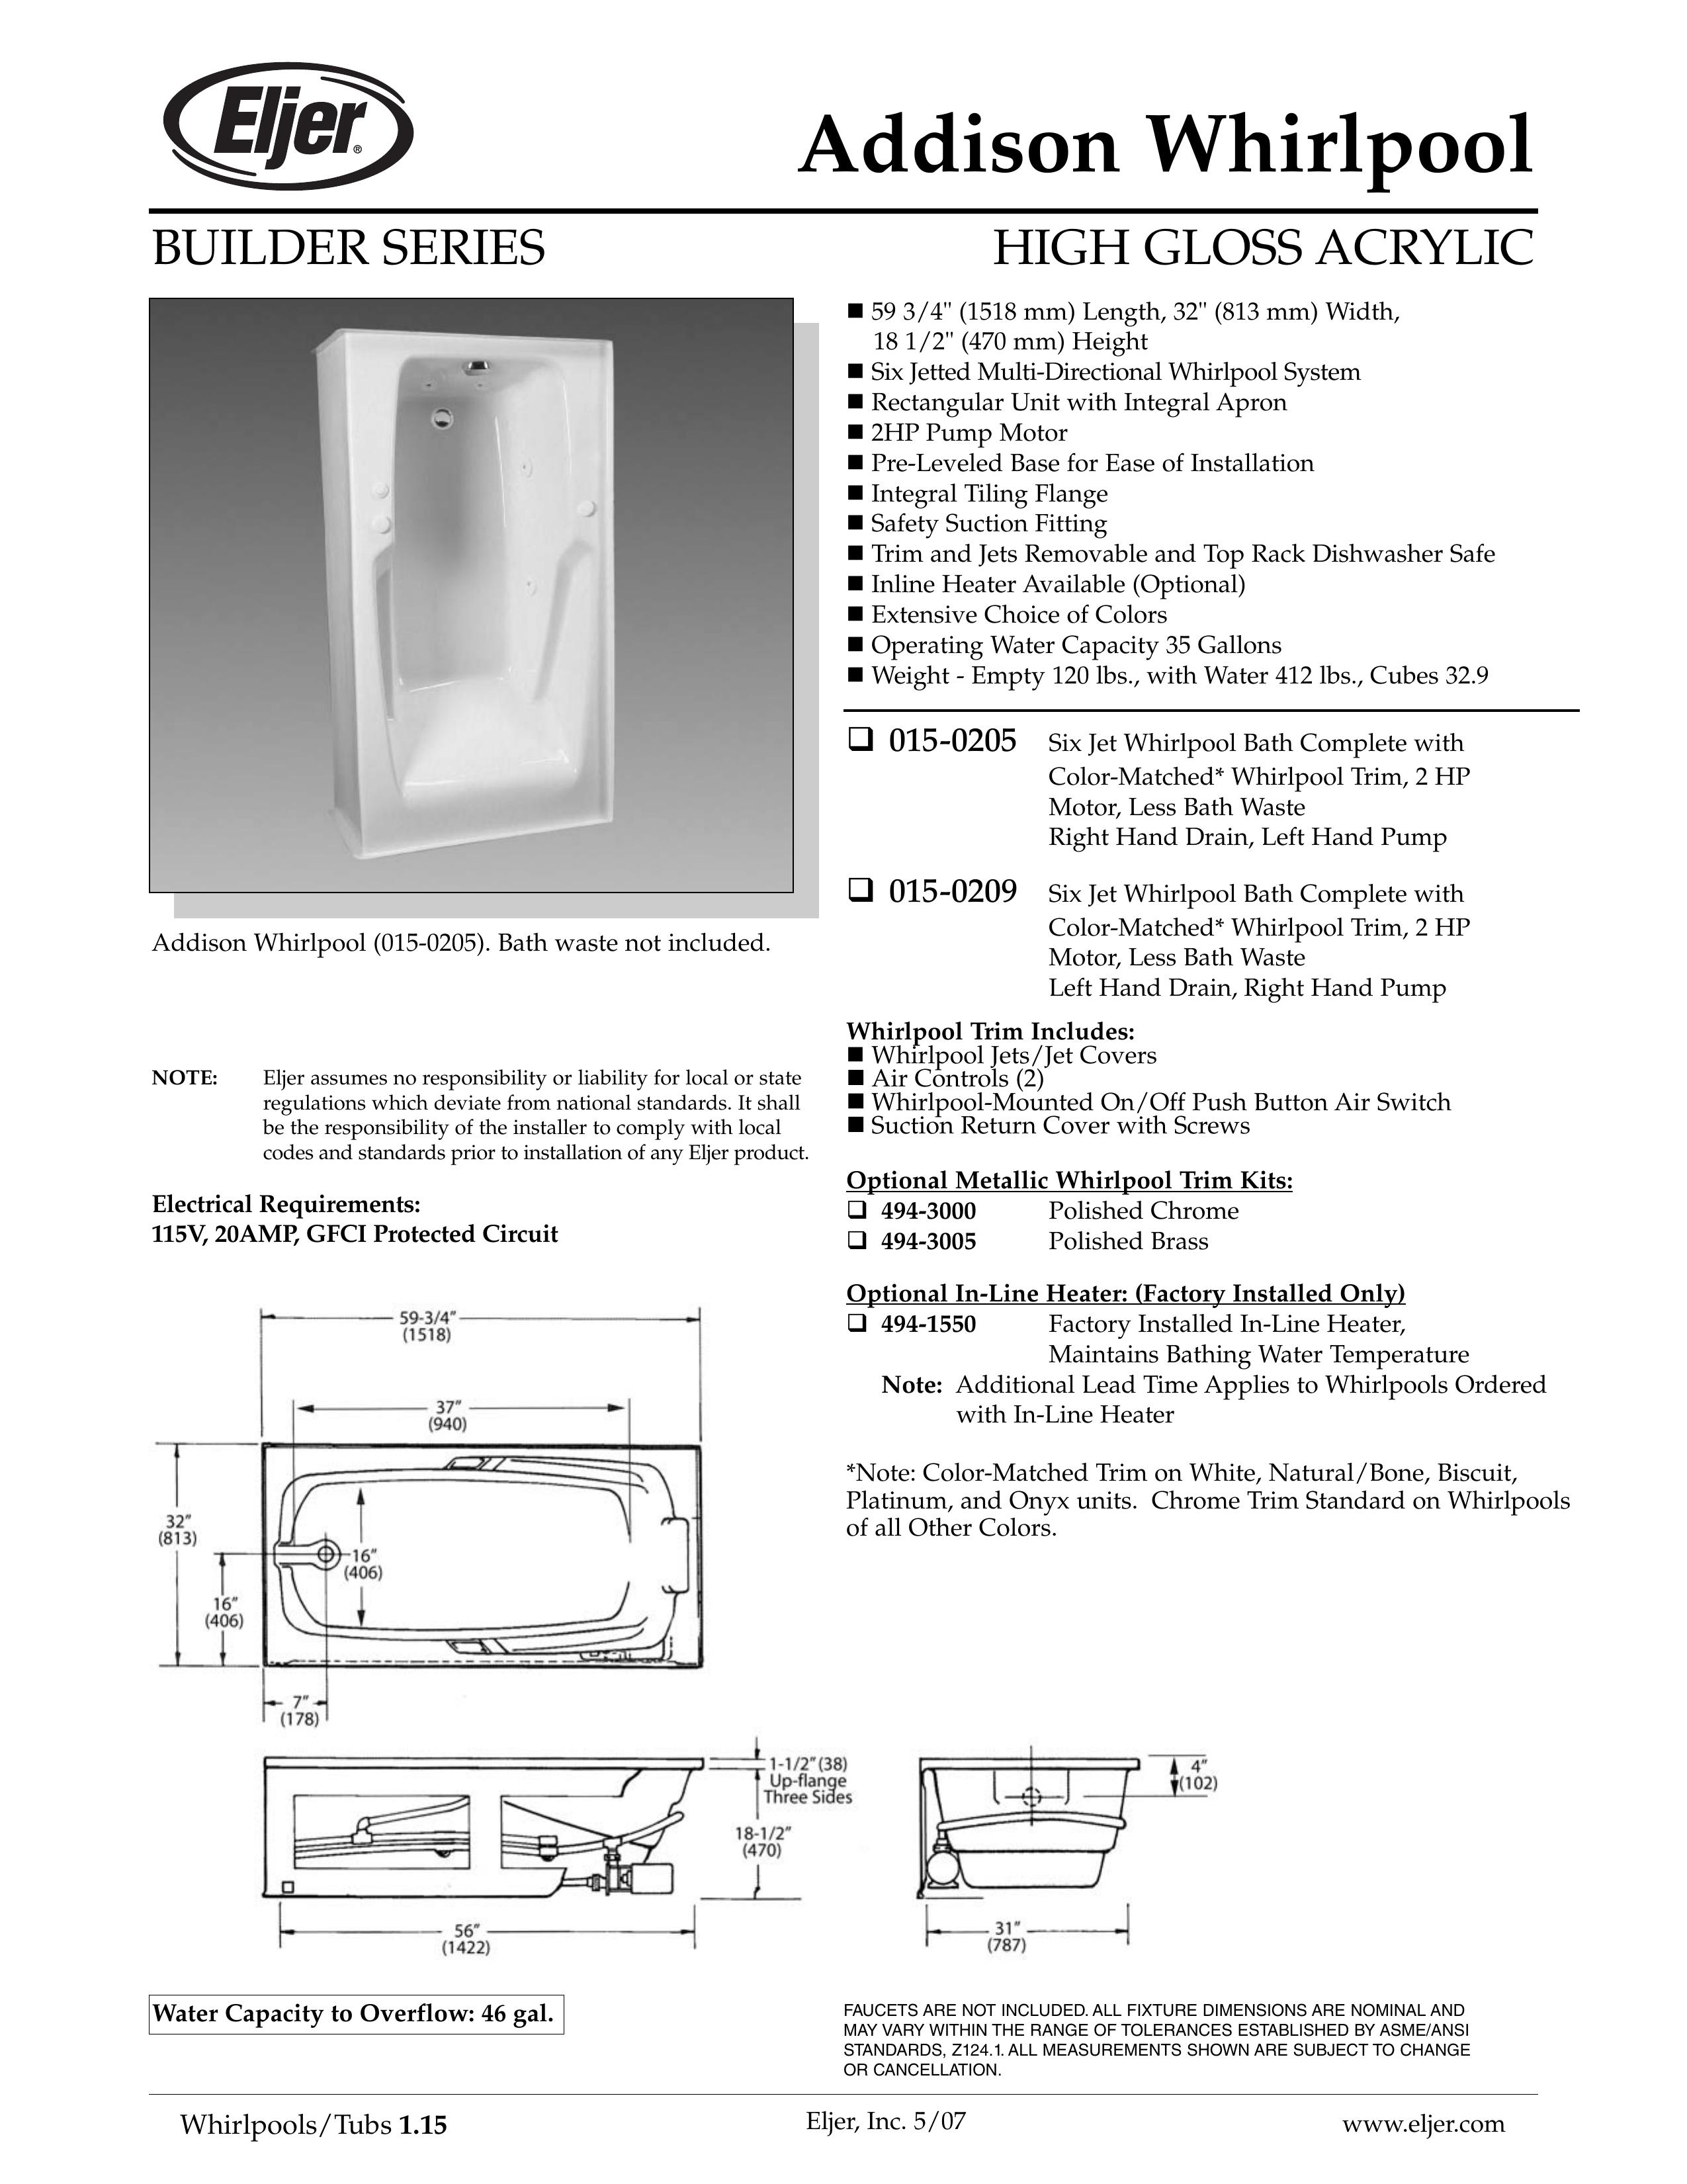 American Standard 015-0209 Hot Tub User Manual